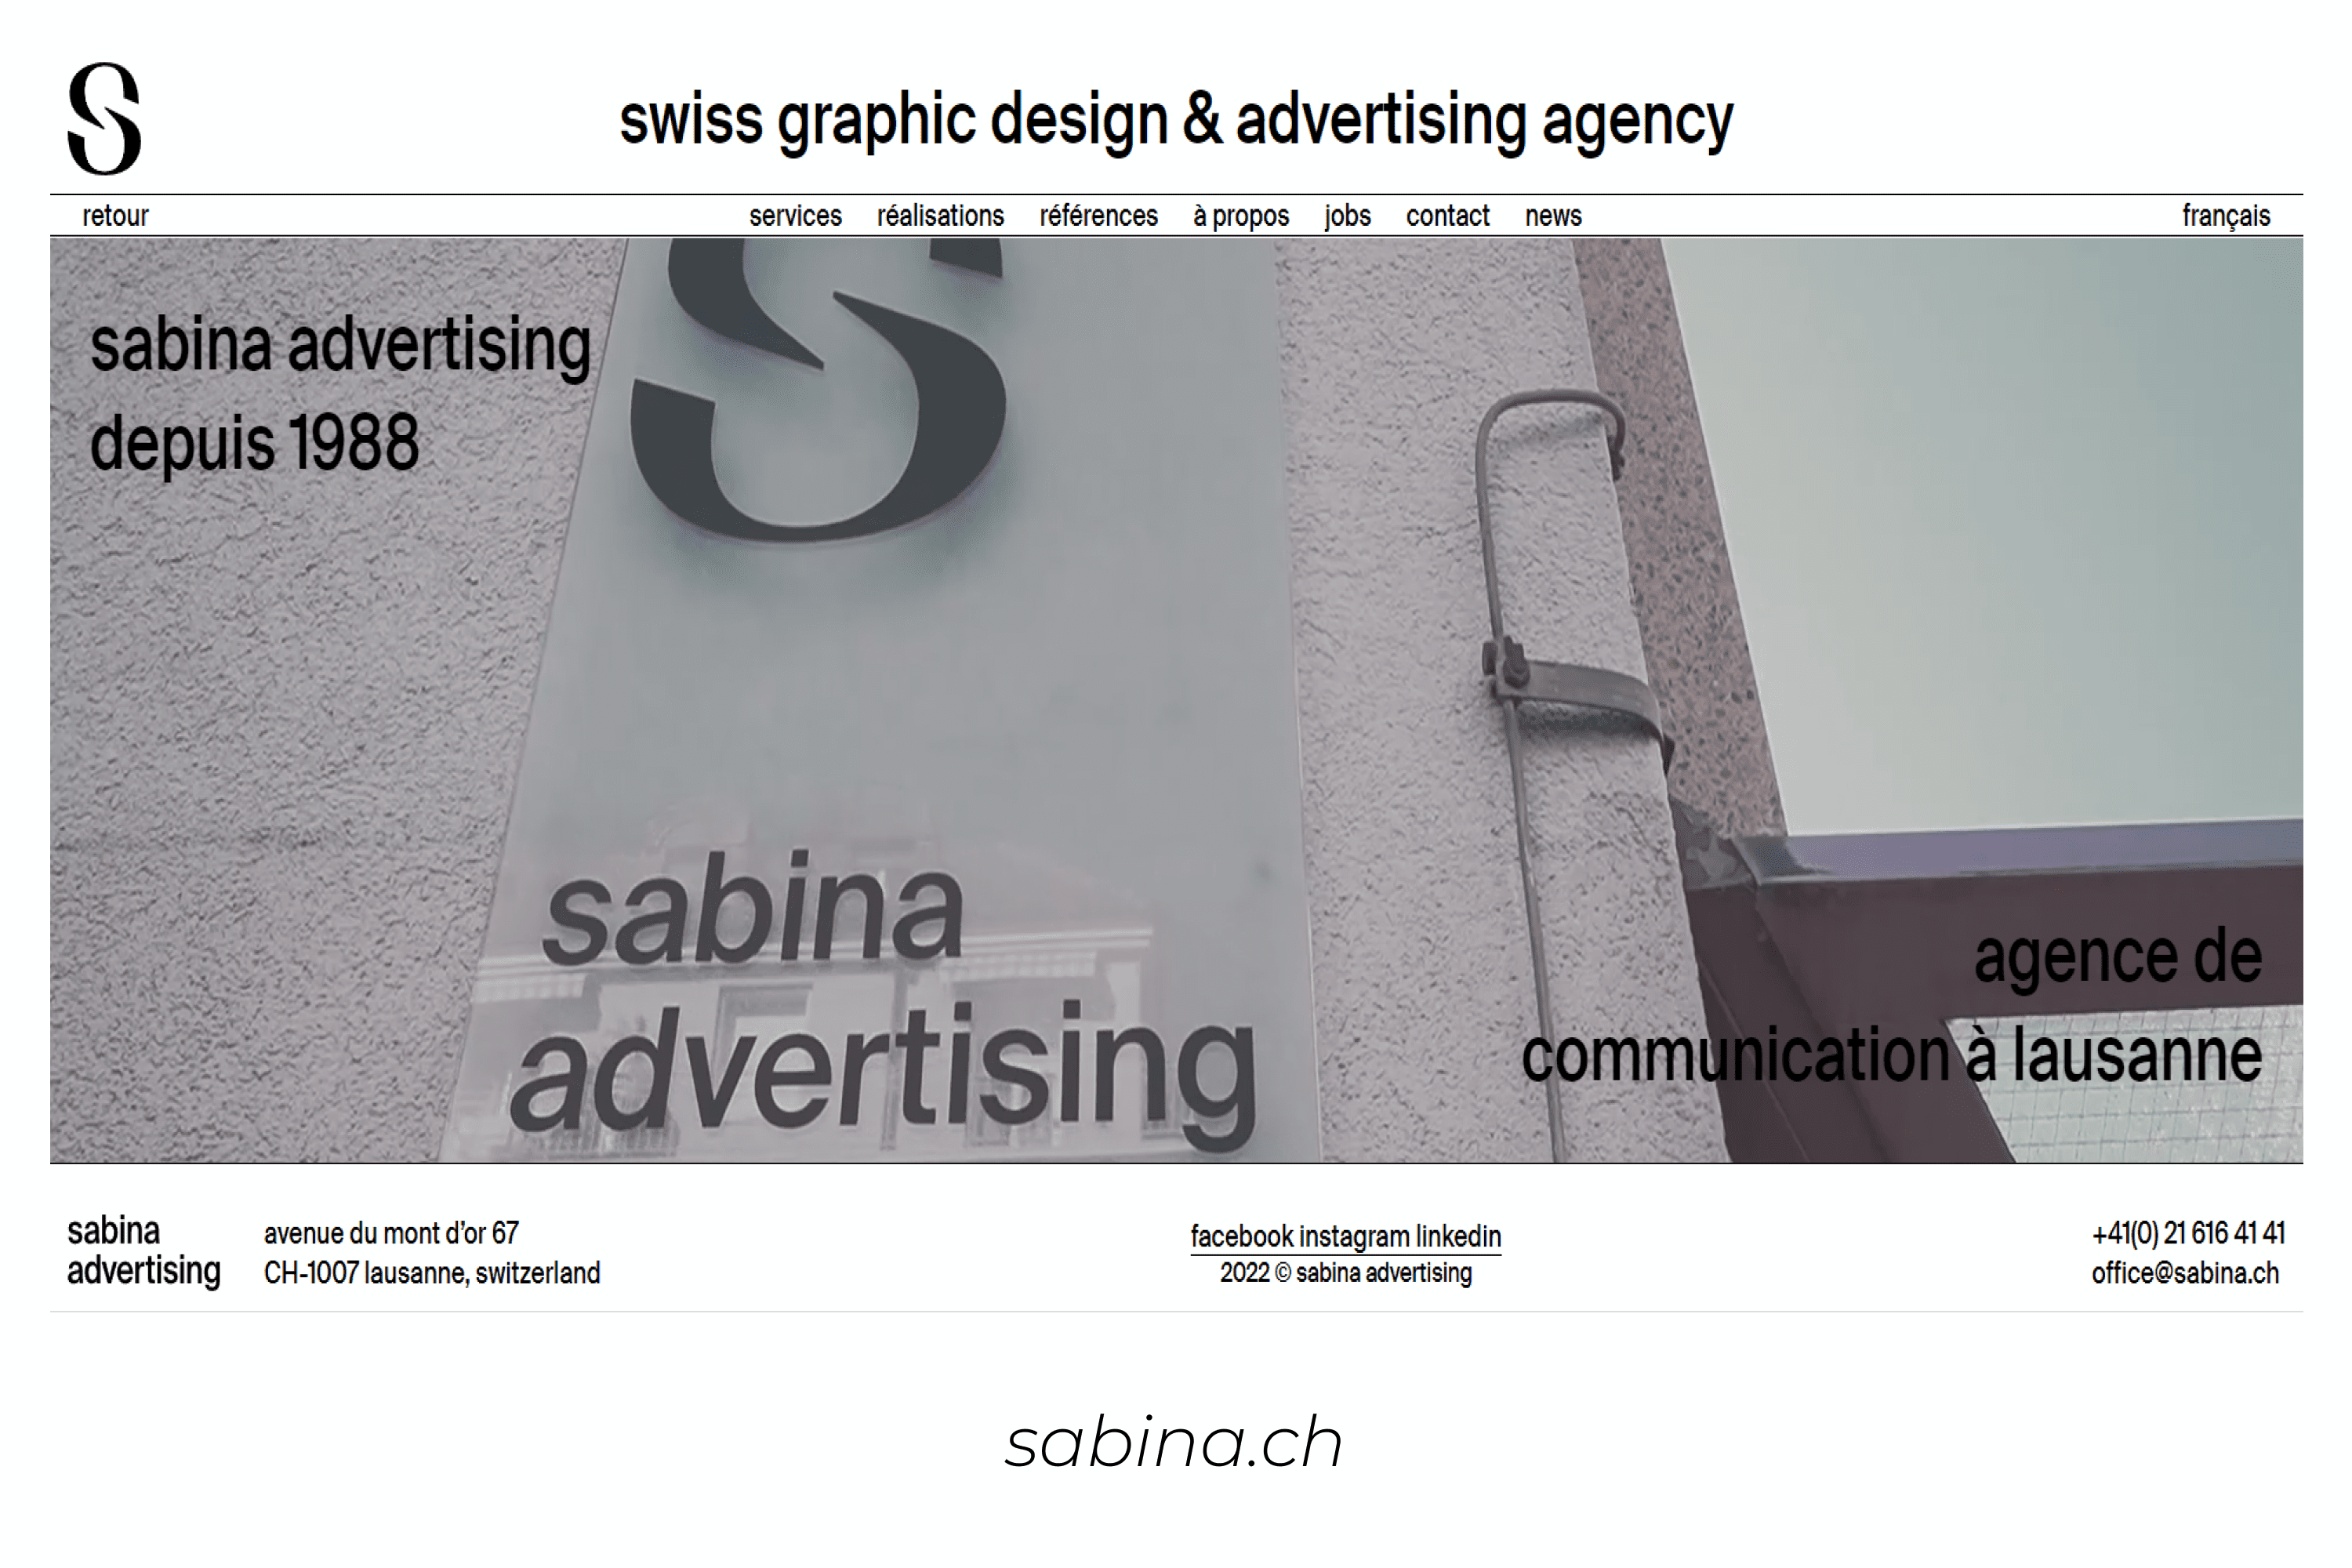 Main page of Sabina Advertising.